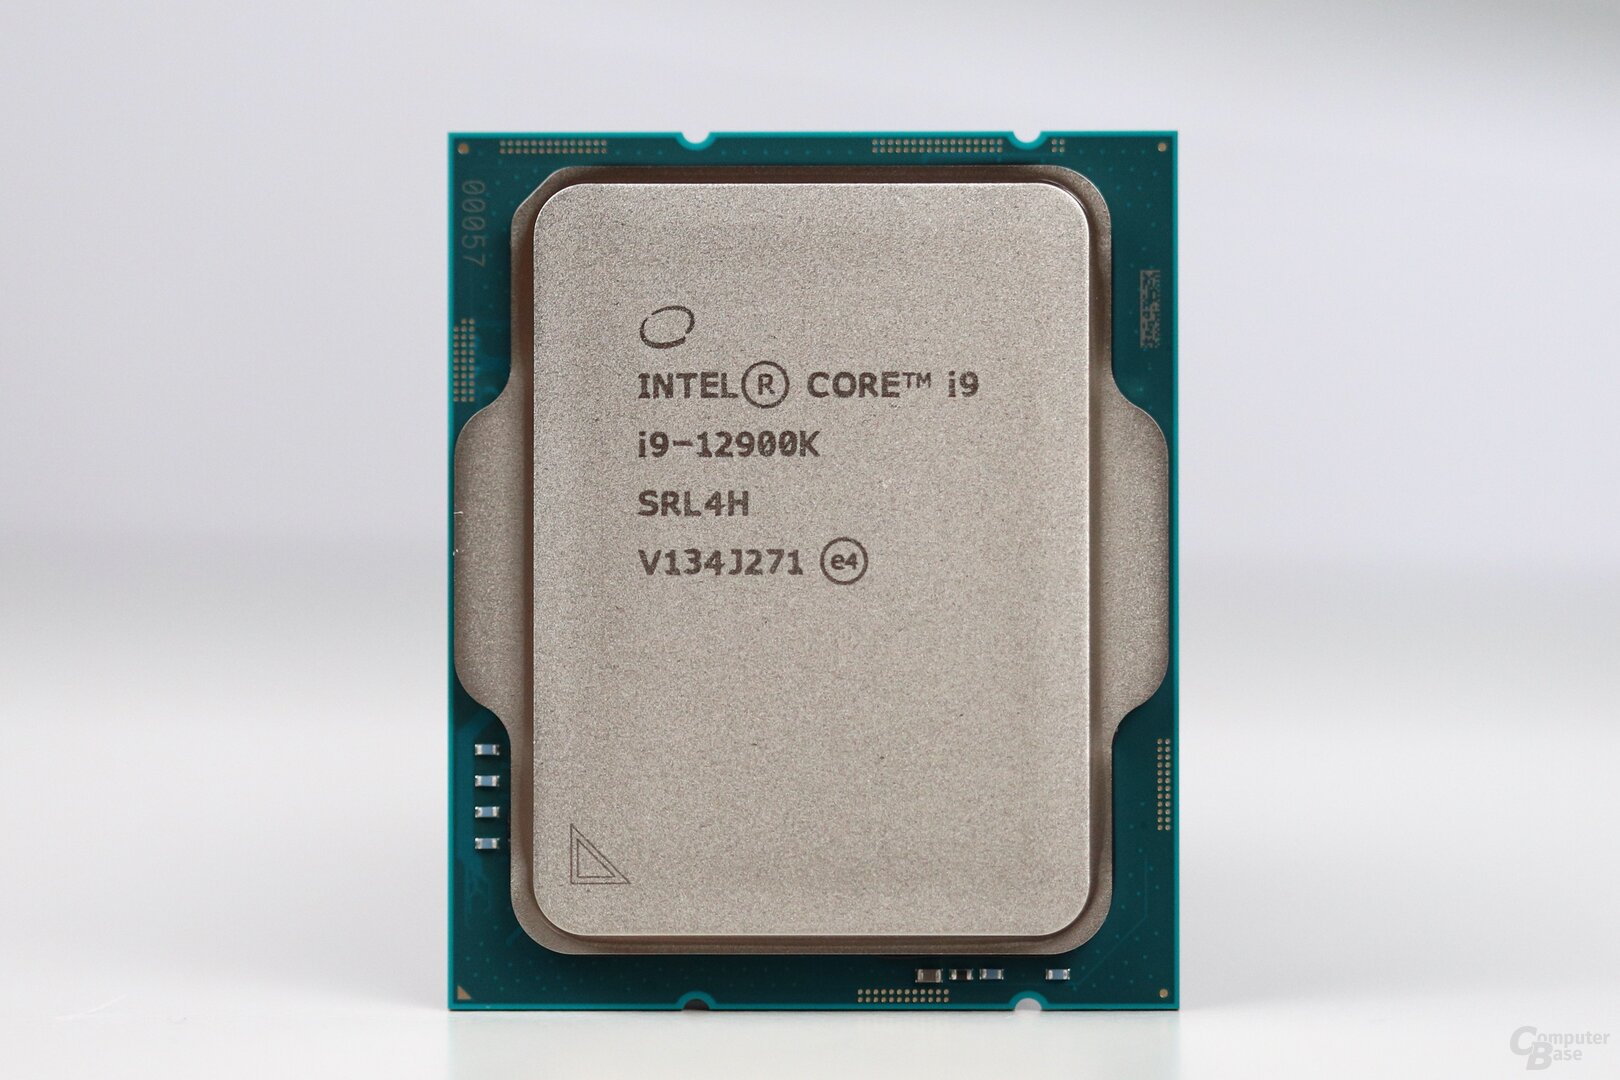 Das neue Topmodell: Intel Core i9-12900K mit 8+8 Kernen